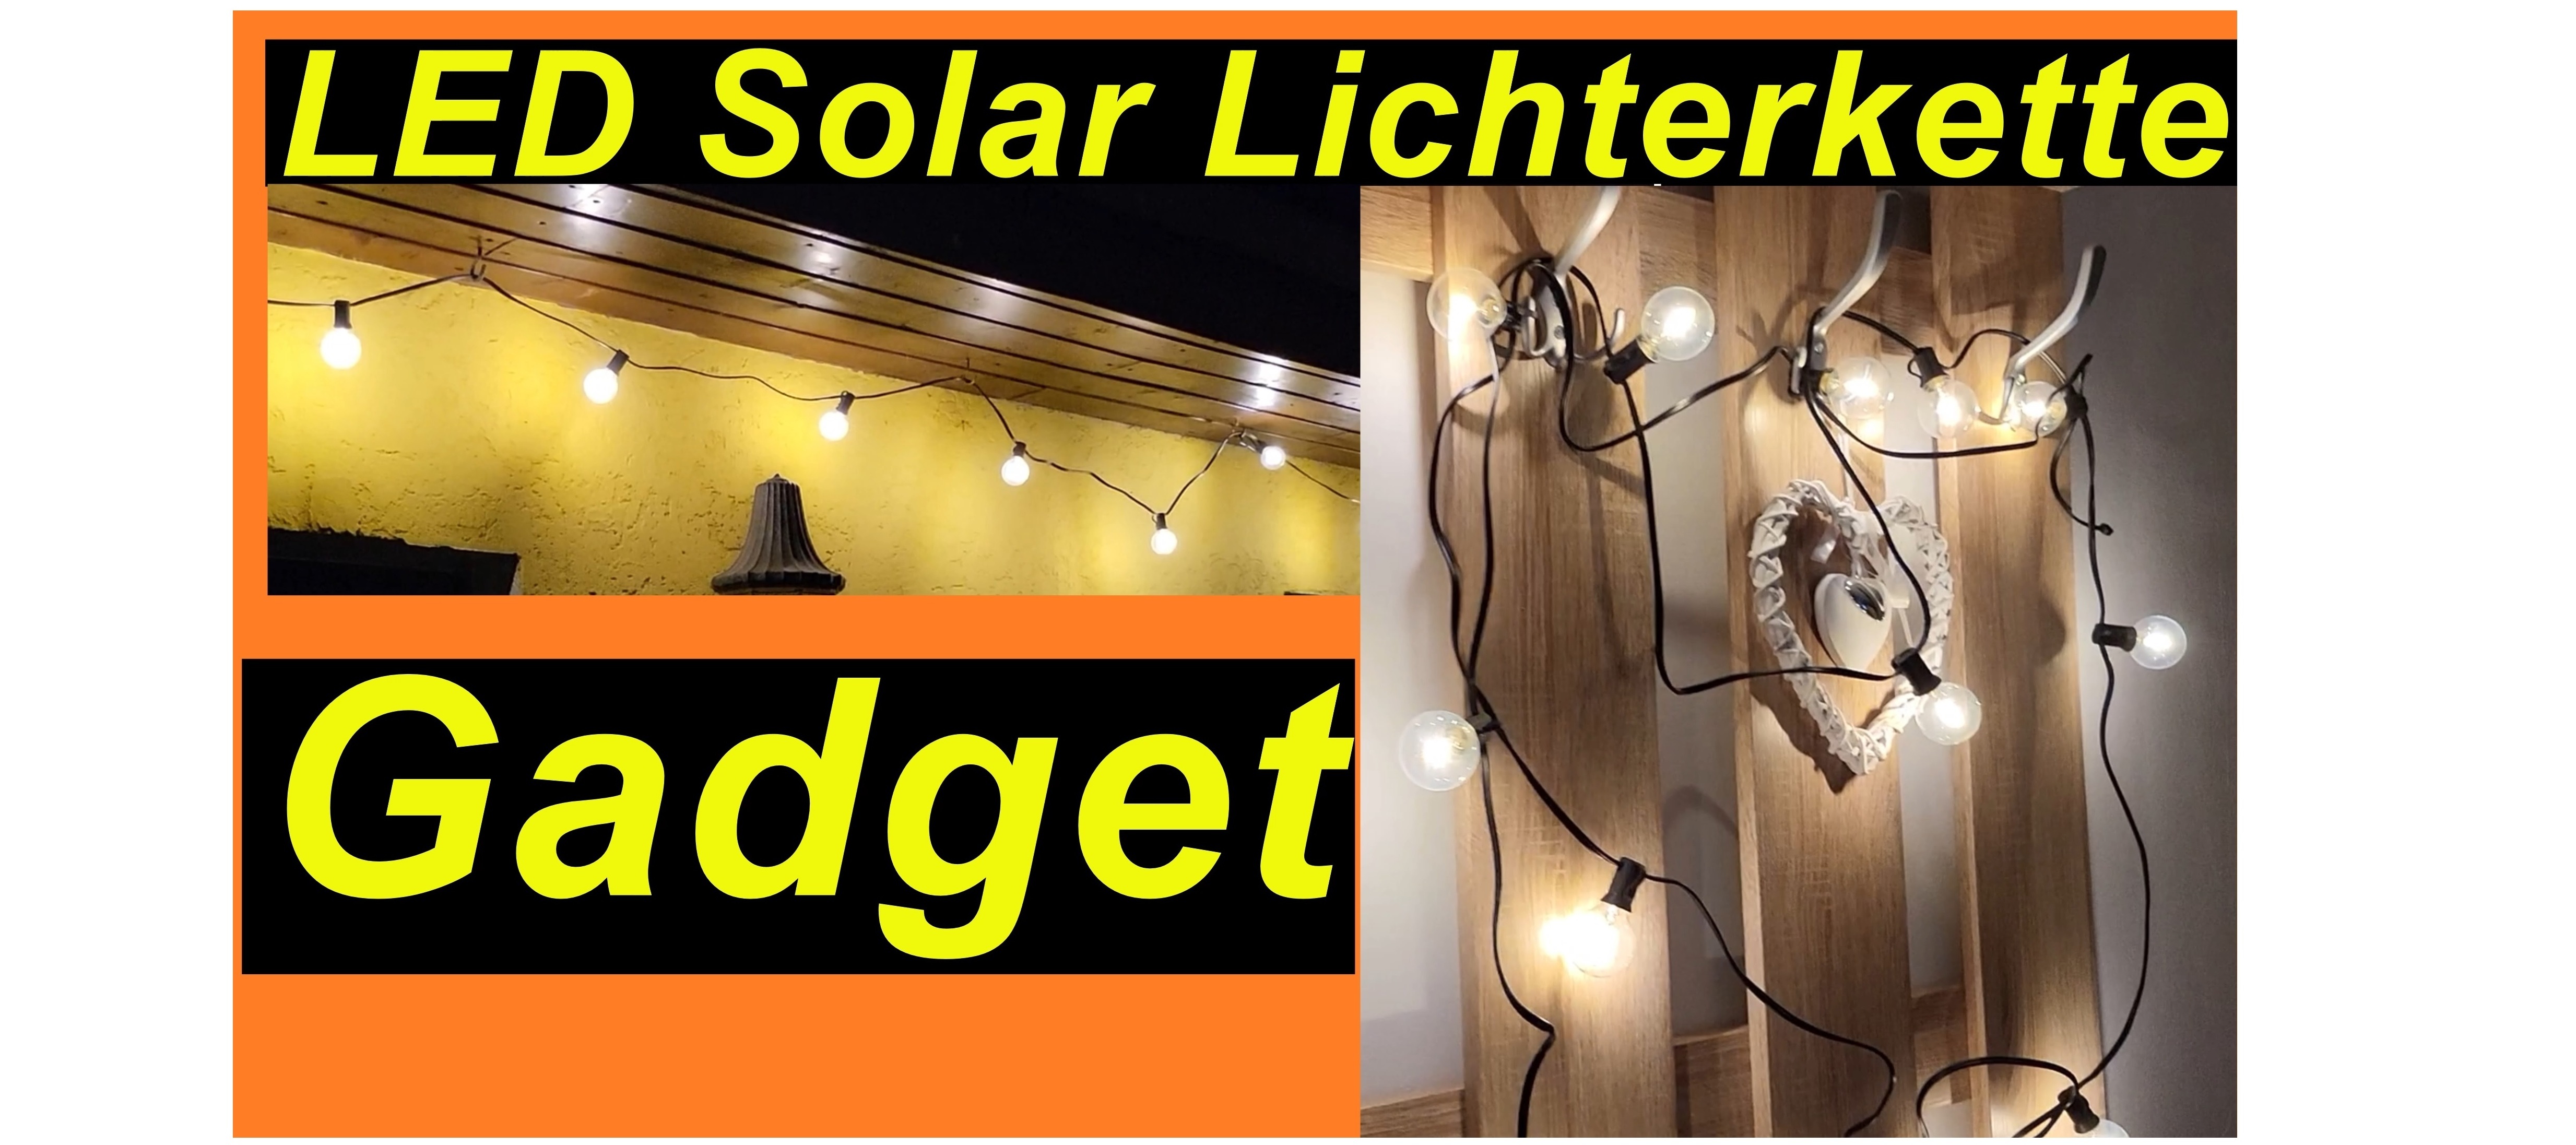 Gadget: LED Solar Lichterkette. Draußen und Drinnen.